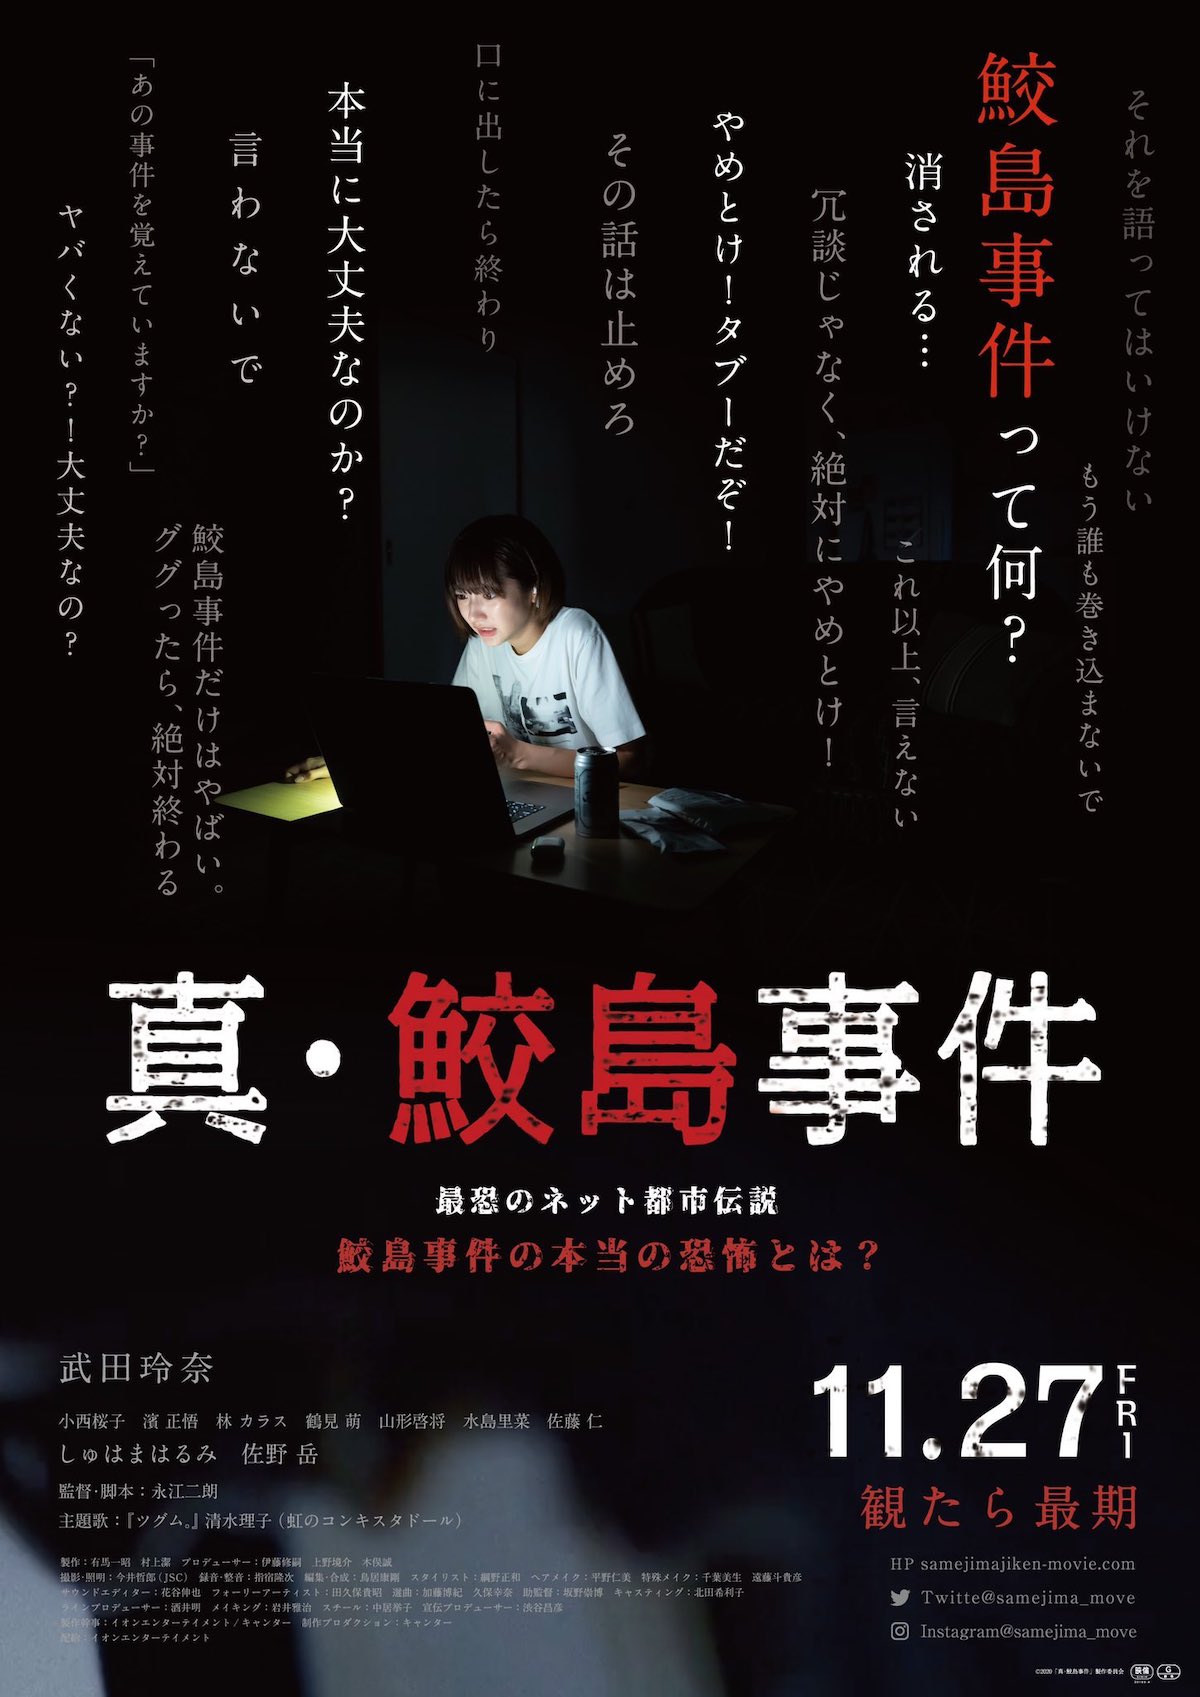 Главный трейлер и постер к фильму "Инцидент в Сим Самэдзима"